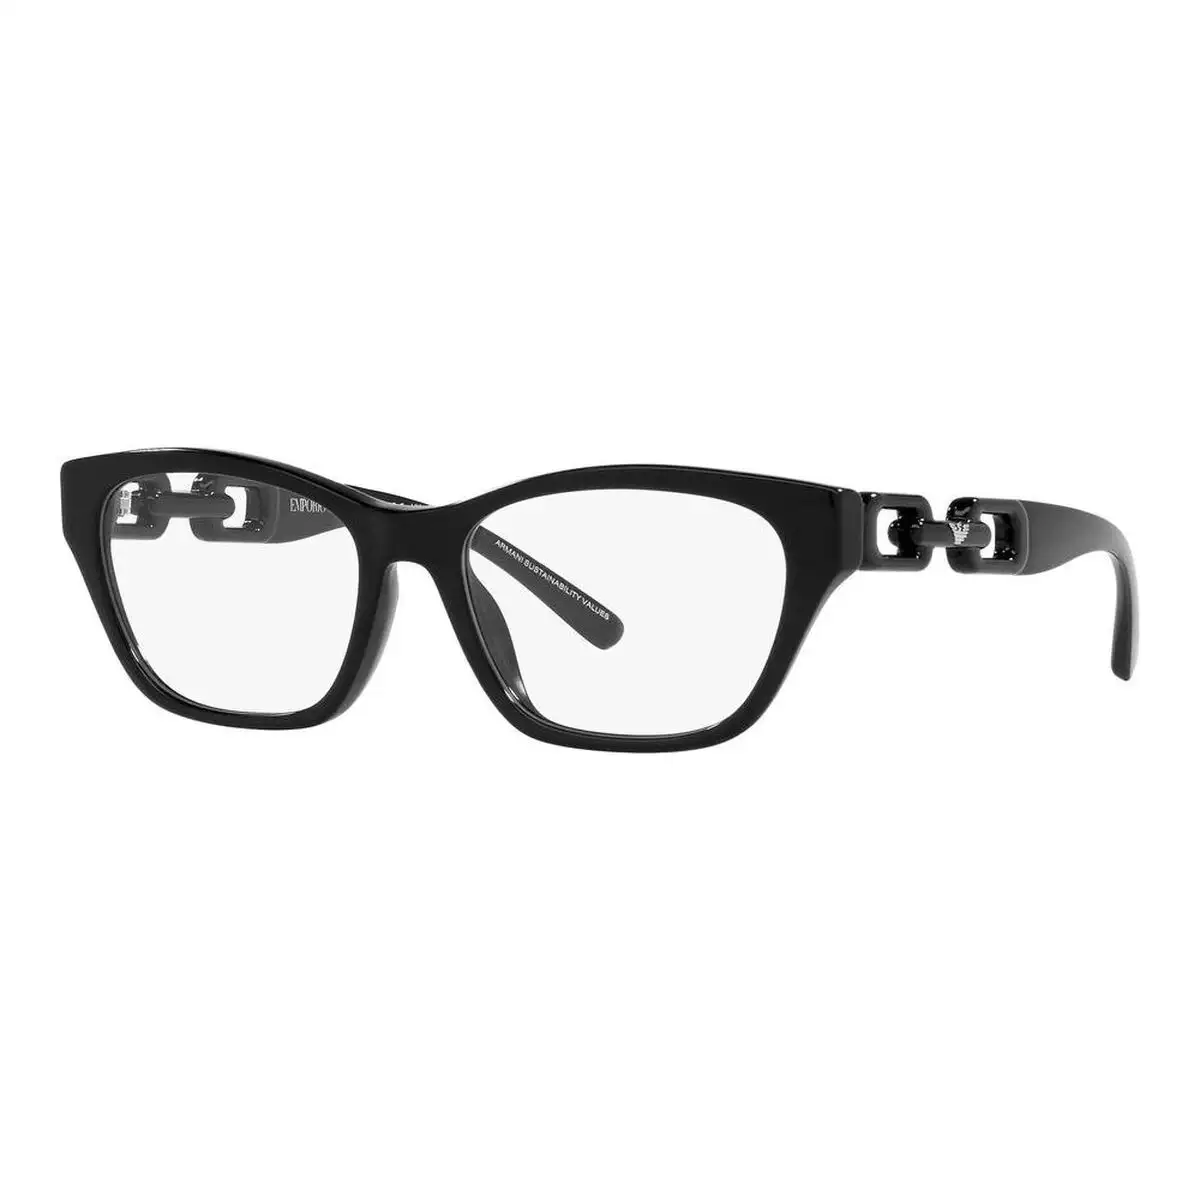 Monture de lunettes femme emporio armani ea 3223u_3896. DIAYTAR SENEGAL - Votre Plateforme Shopping de Confiance. Naviguez à travers nos rayons et choisissez des produits fiables qui répondent à vos besoins quotidiens.